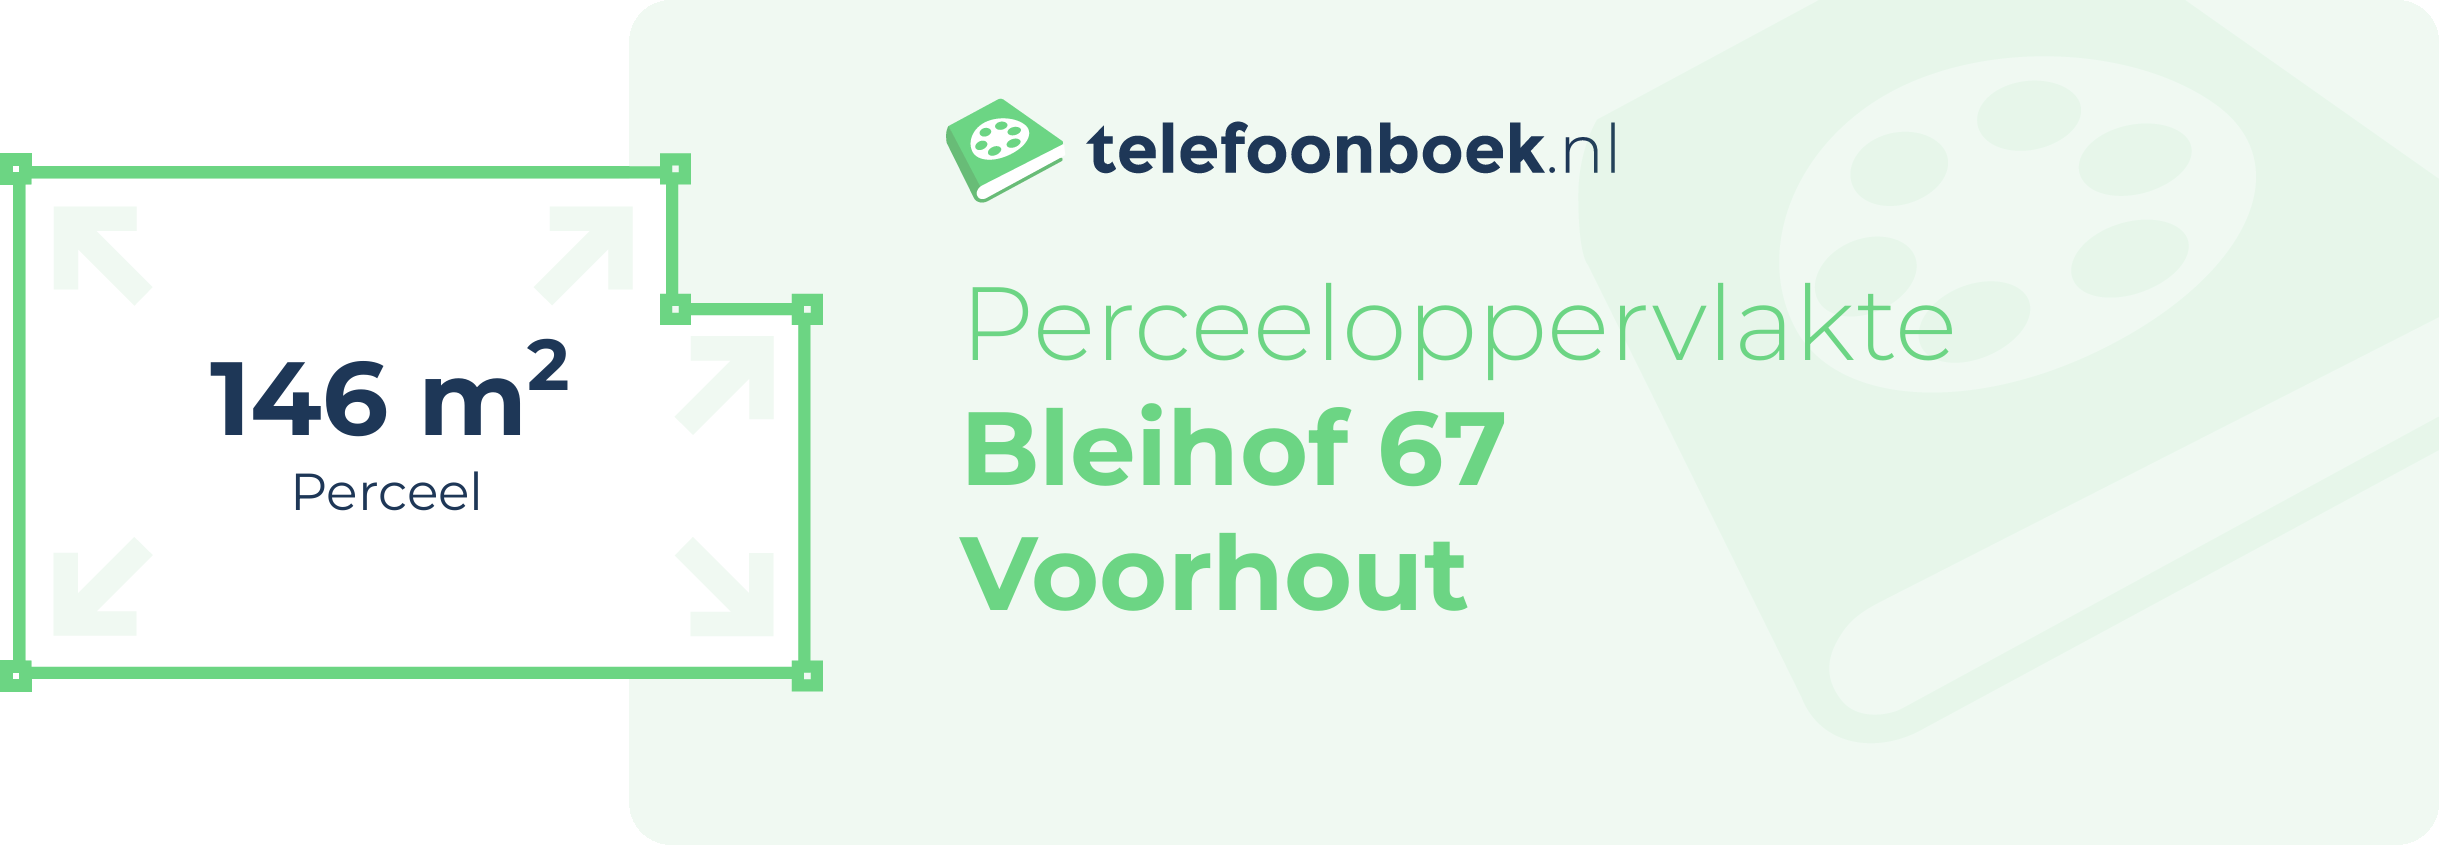 Perceeloppervlakte Bleihof 67 Voorhout